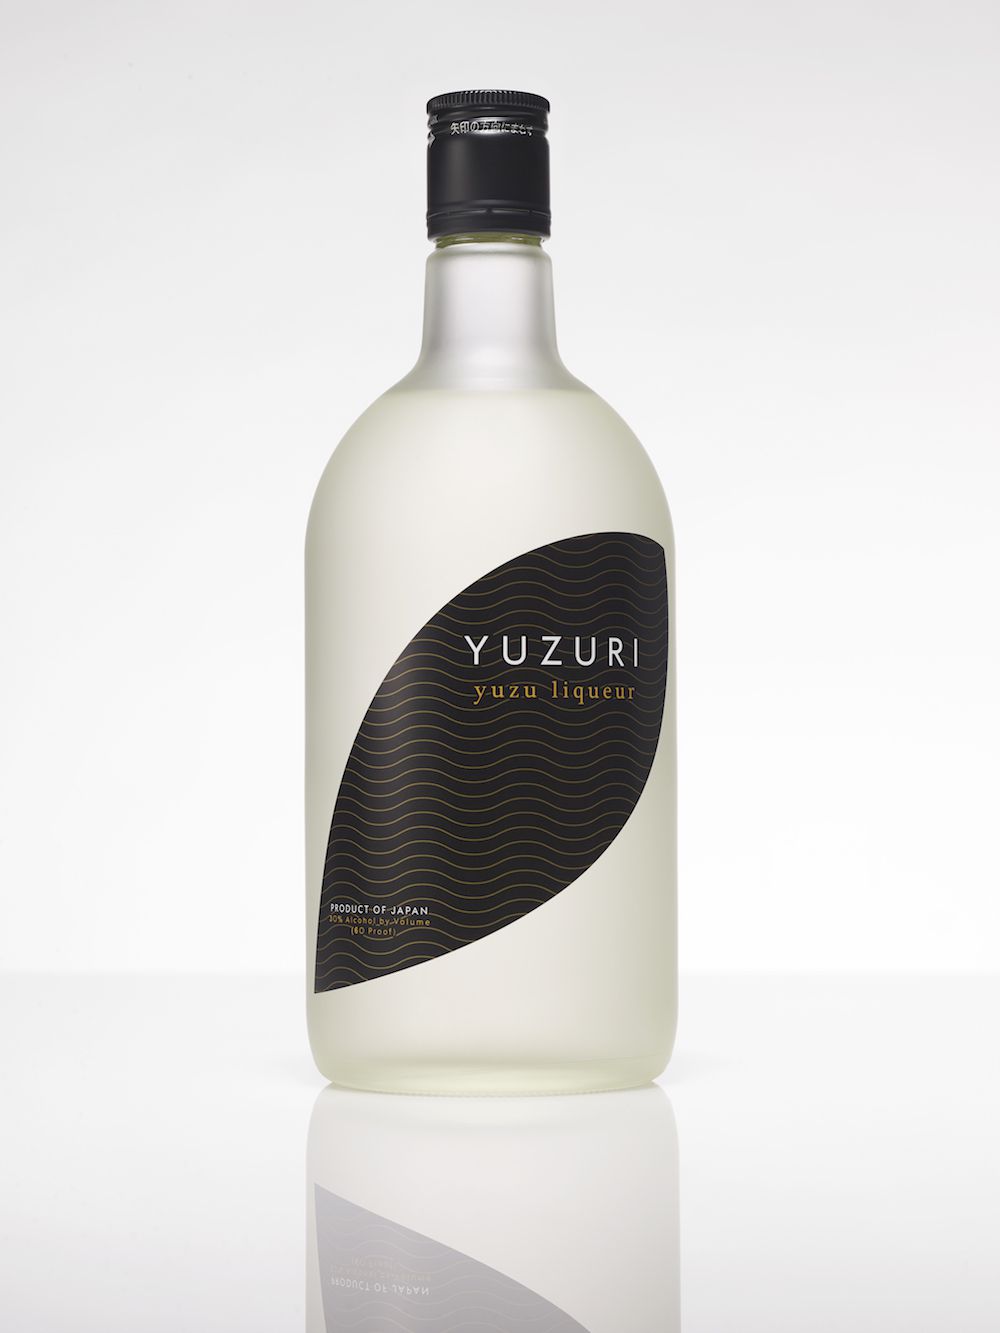 yuzuri-bottle-blog1117.jpg